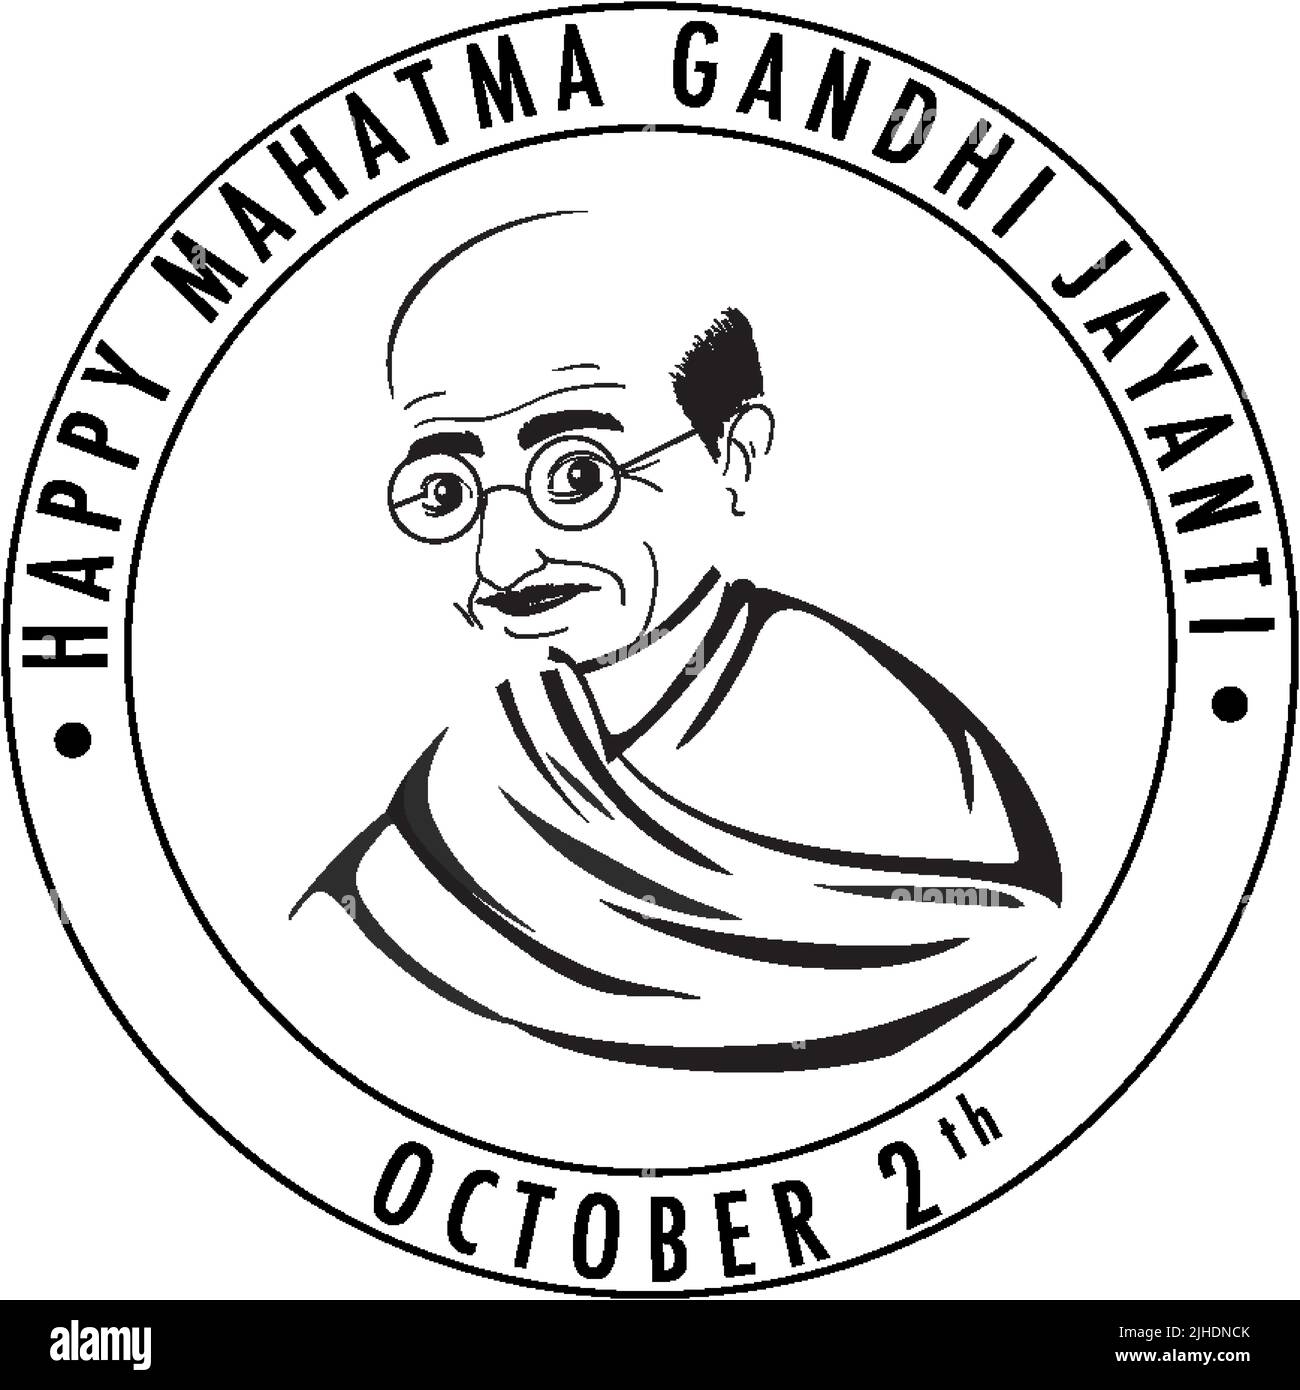 Mahatma Gandhi Jayanti Day Poster illustration Stock Vector